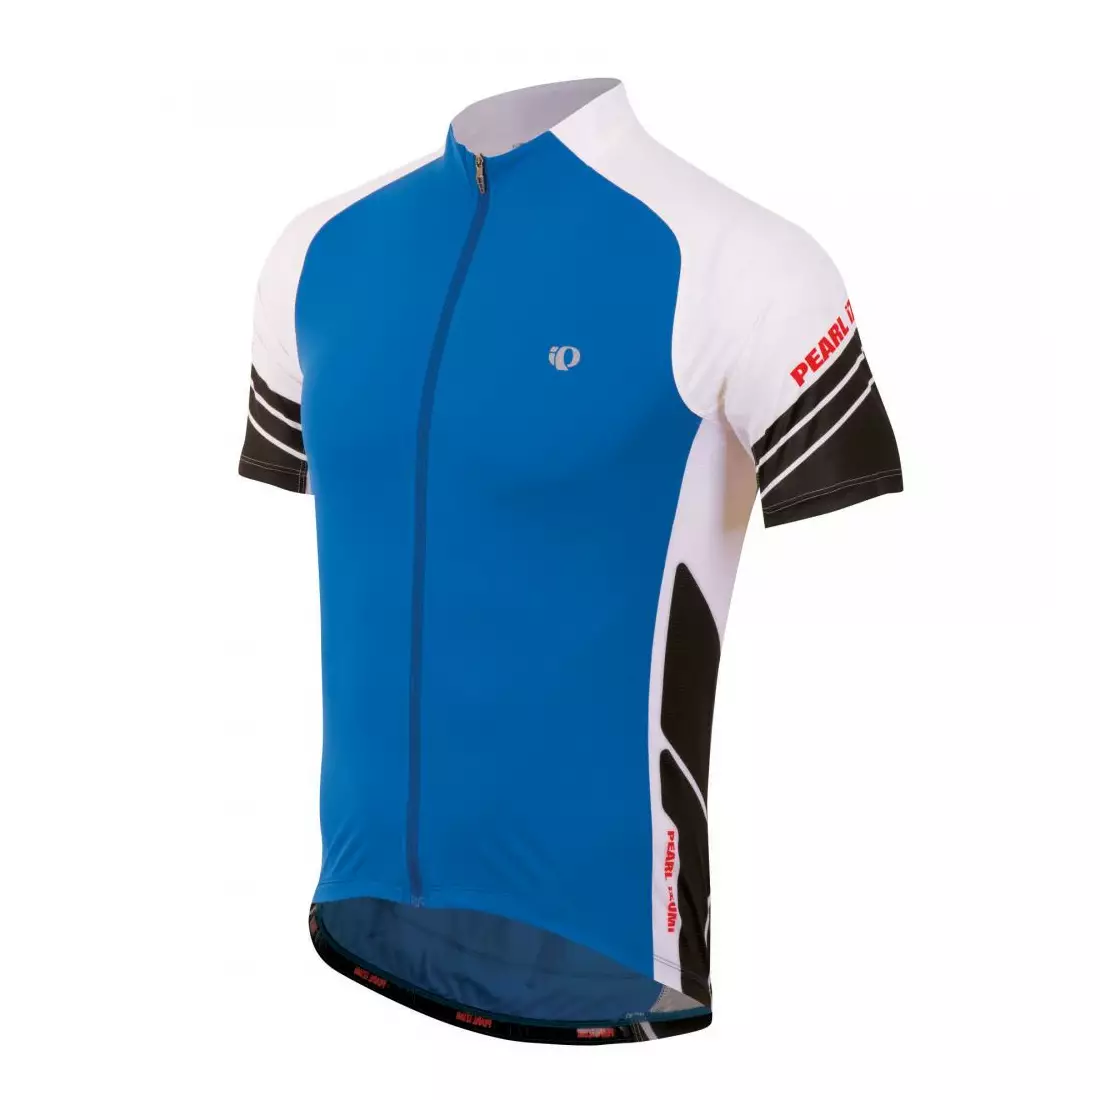 PEARL IZUMI - ELITE 11121301-3DQ - lehký cyklistický dres, modrý